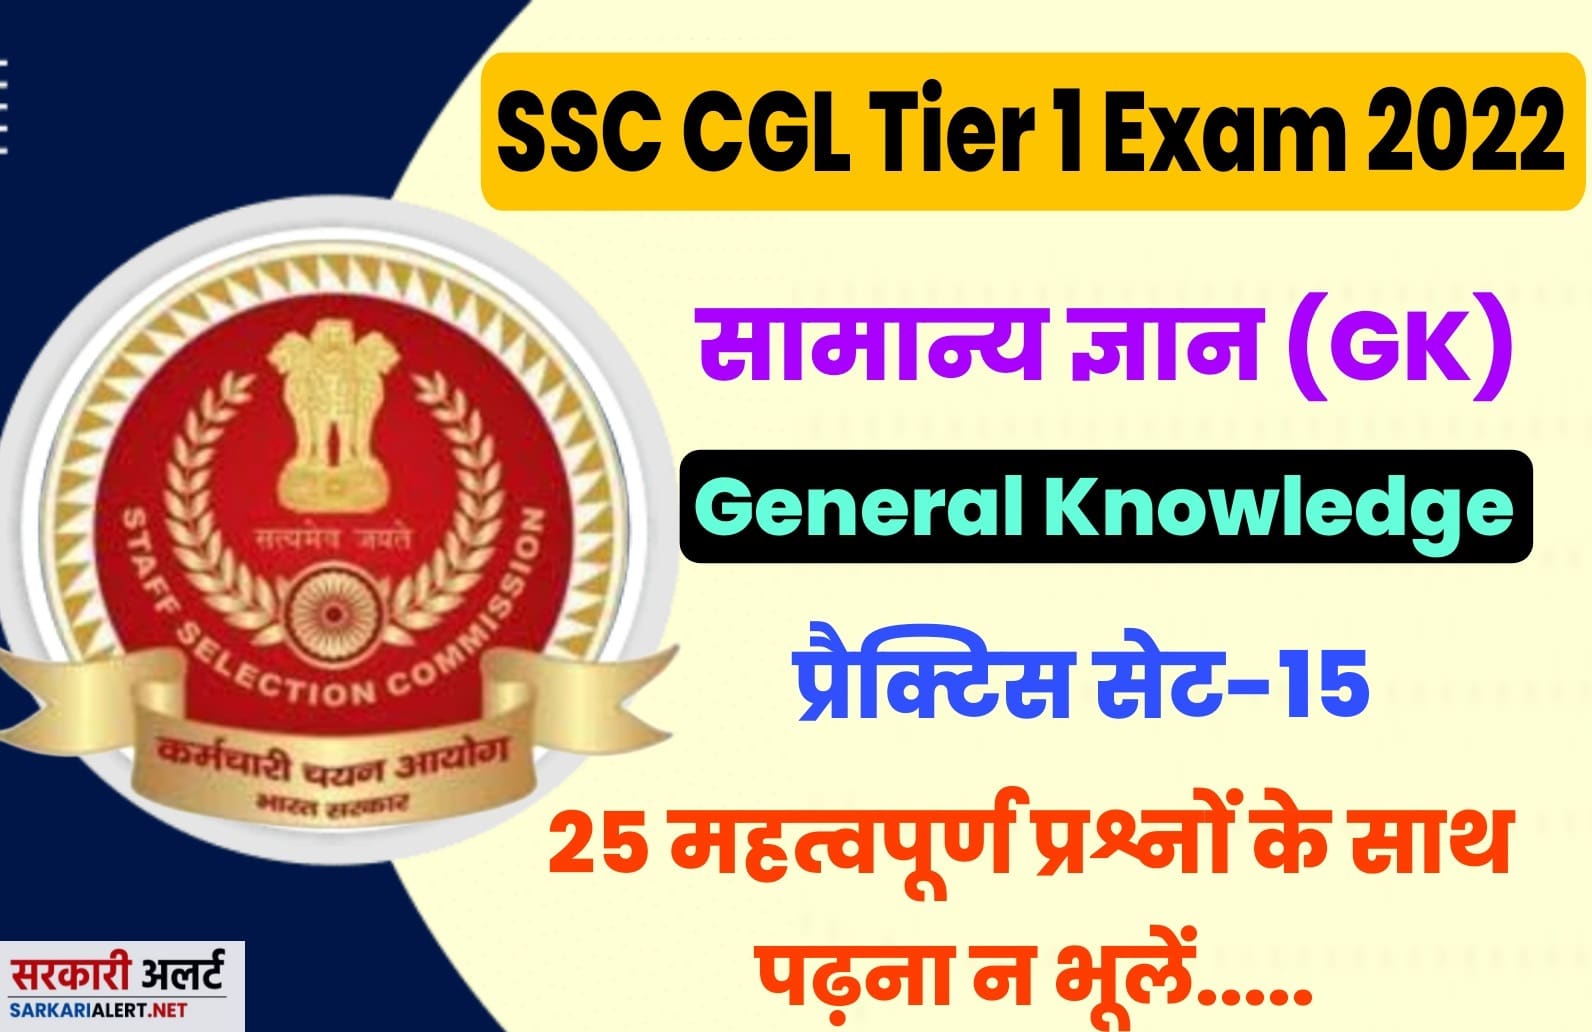 SSC CGL Tier I Exam 2022 GK Practice Set 15 | परीक्षा हॉल में जाने से पहले अतिमहत्वपूर्ण प्रश्नों का अध्ययन अवश्य करें